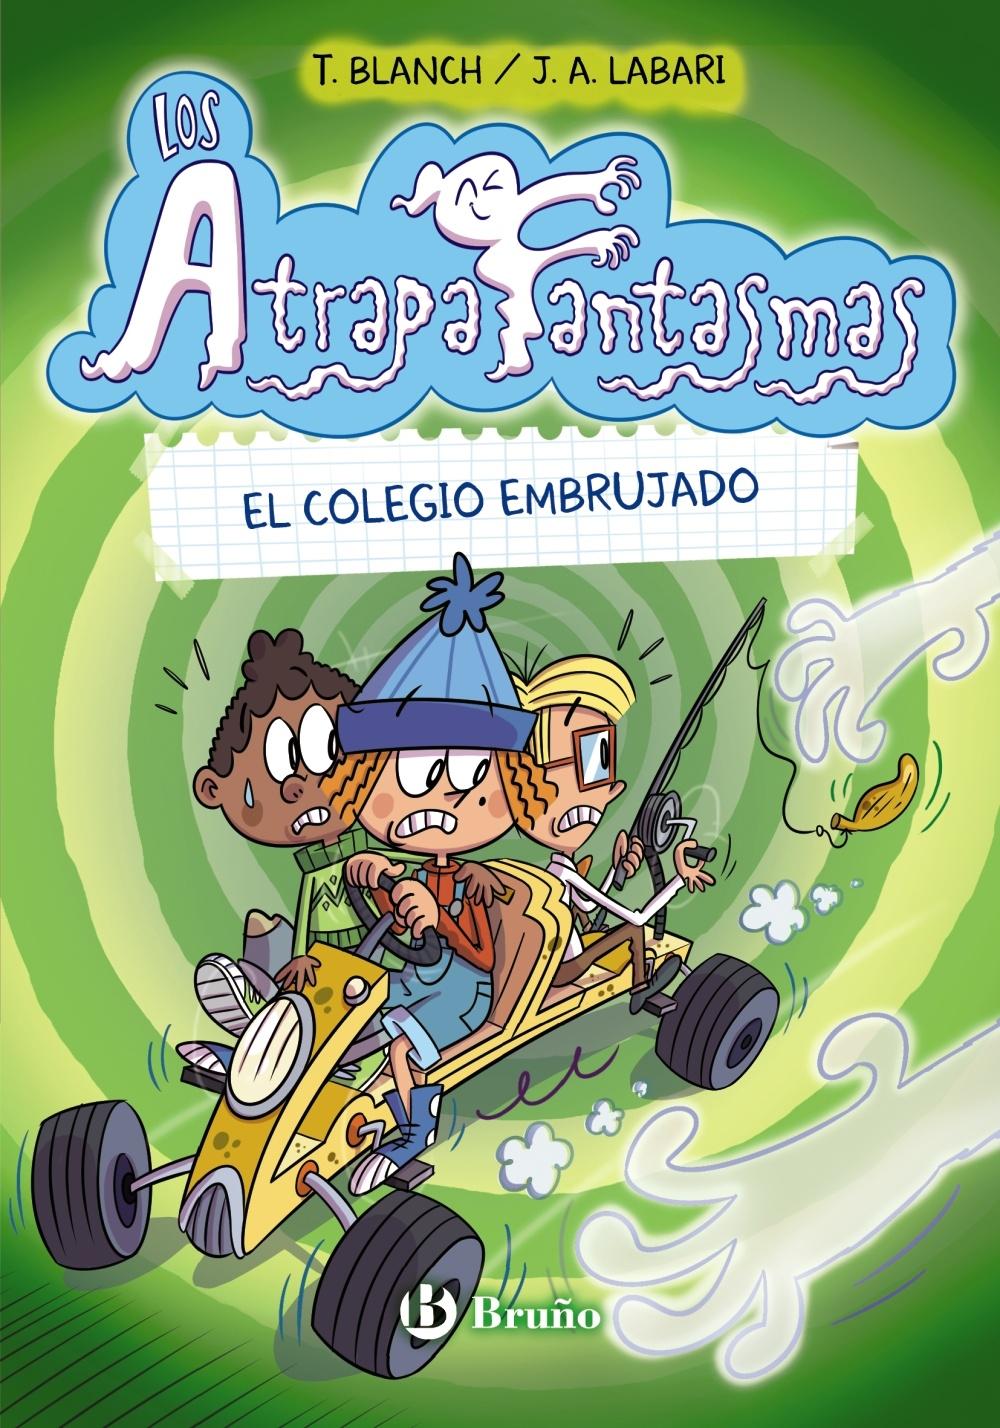 Los Atrapafantasmas 2  "El Colegio Embrujado". 